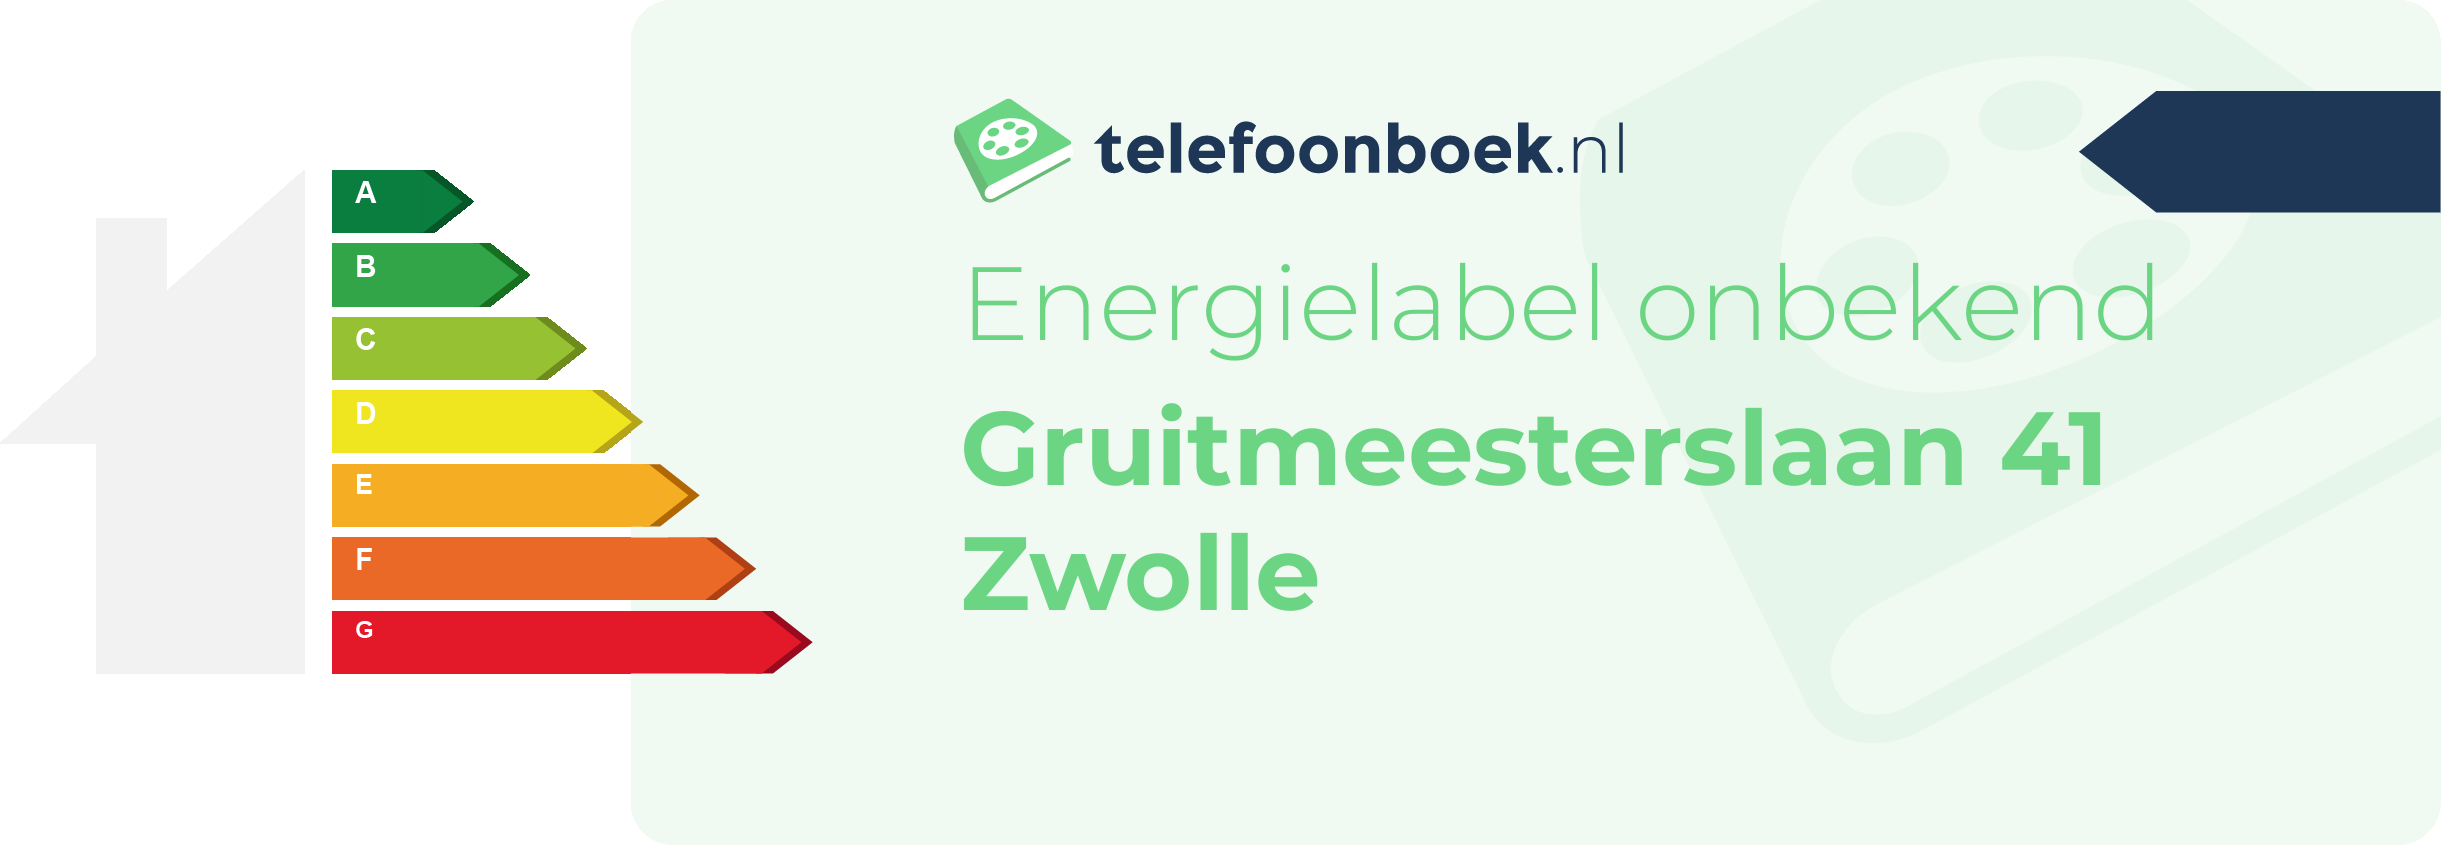 Energielabel Gruitmeesterslaan 41 Zwolle